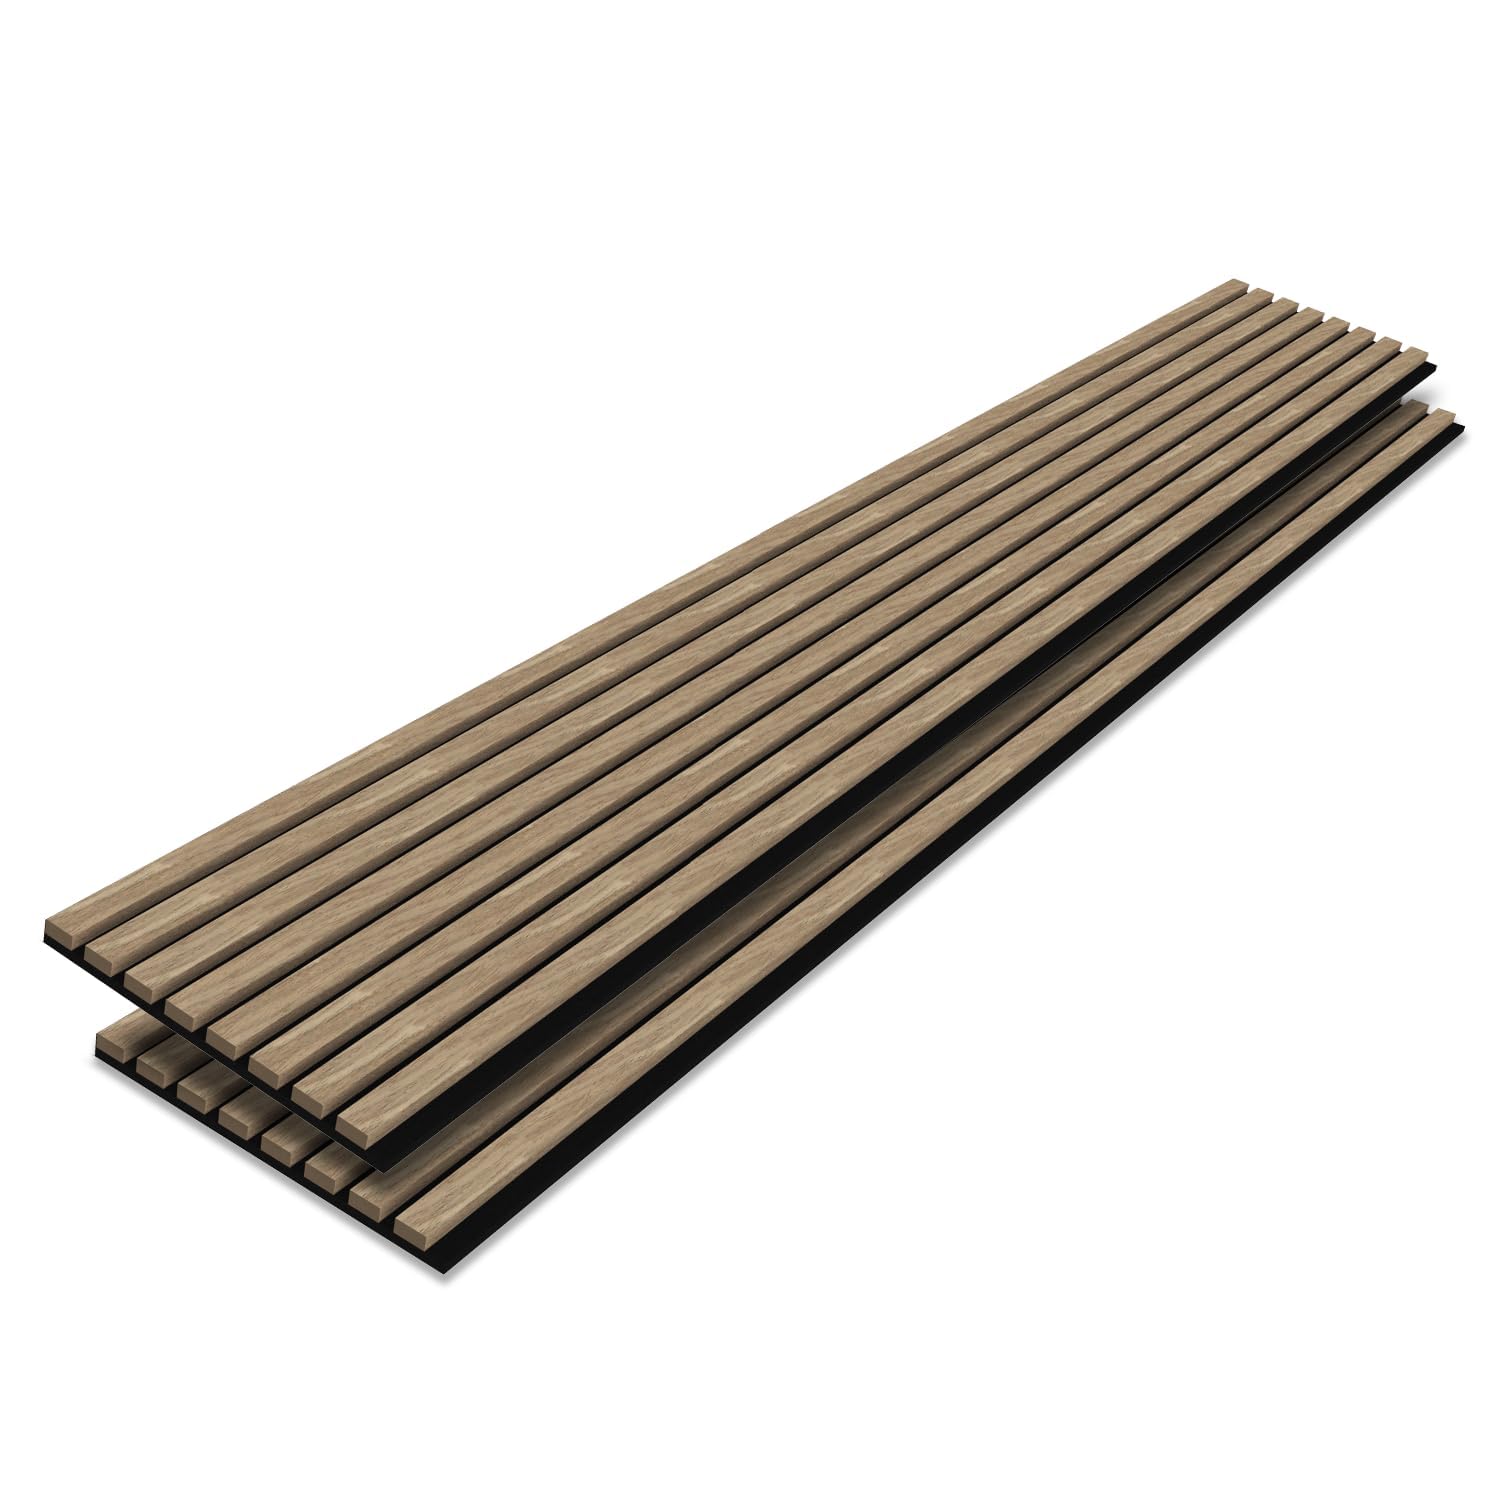 Melamine Wood Acoustic Panel Wholesale